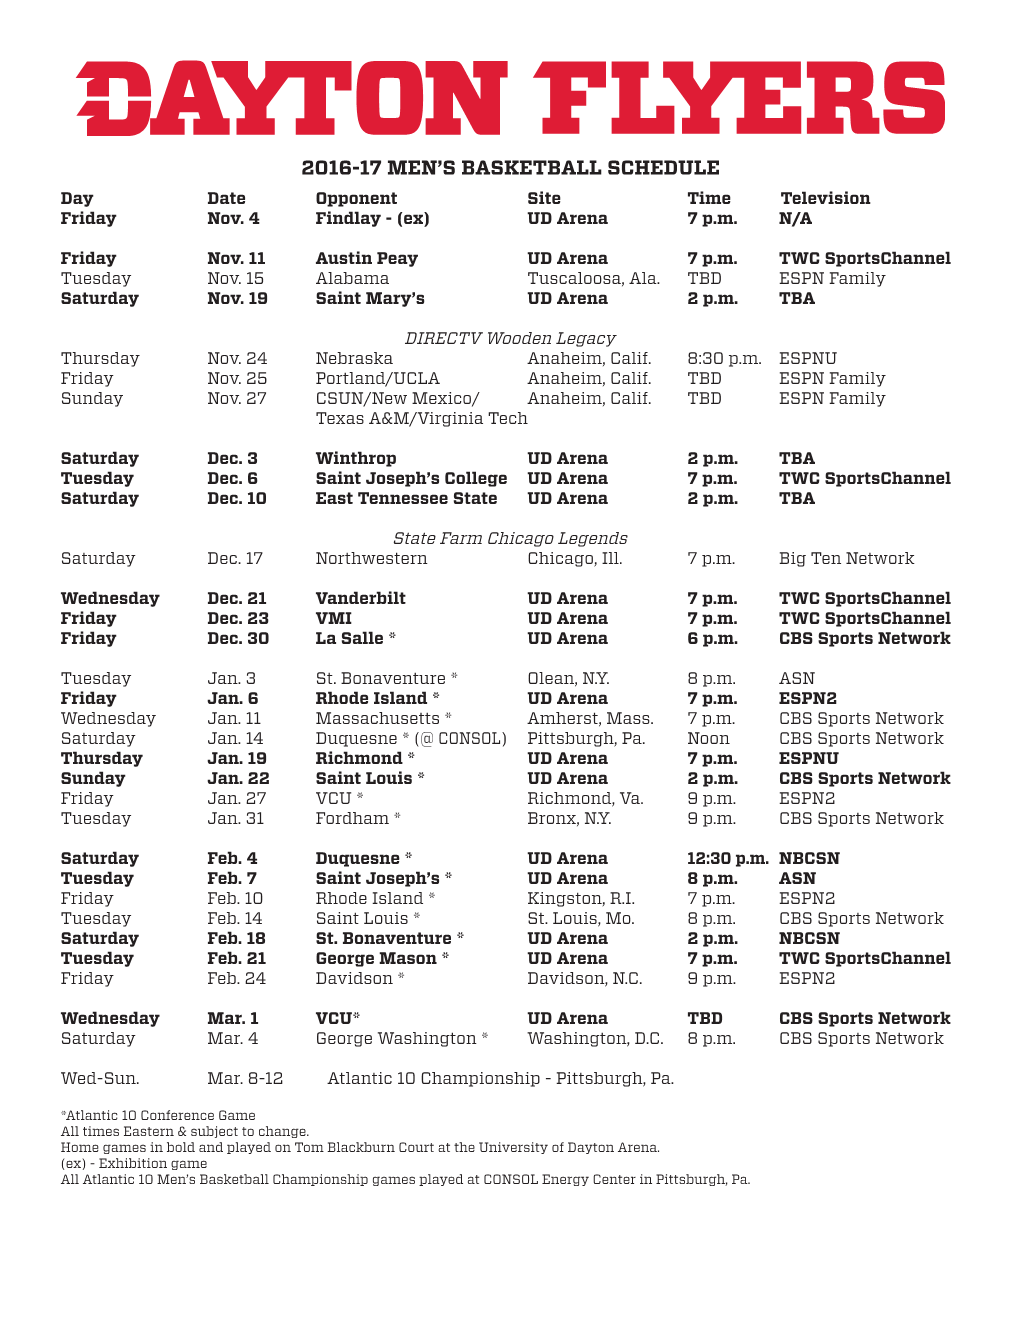 2016-17 Men's Basketball Schedule